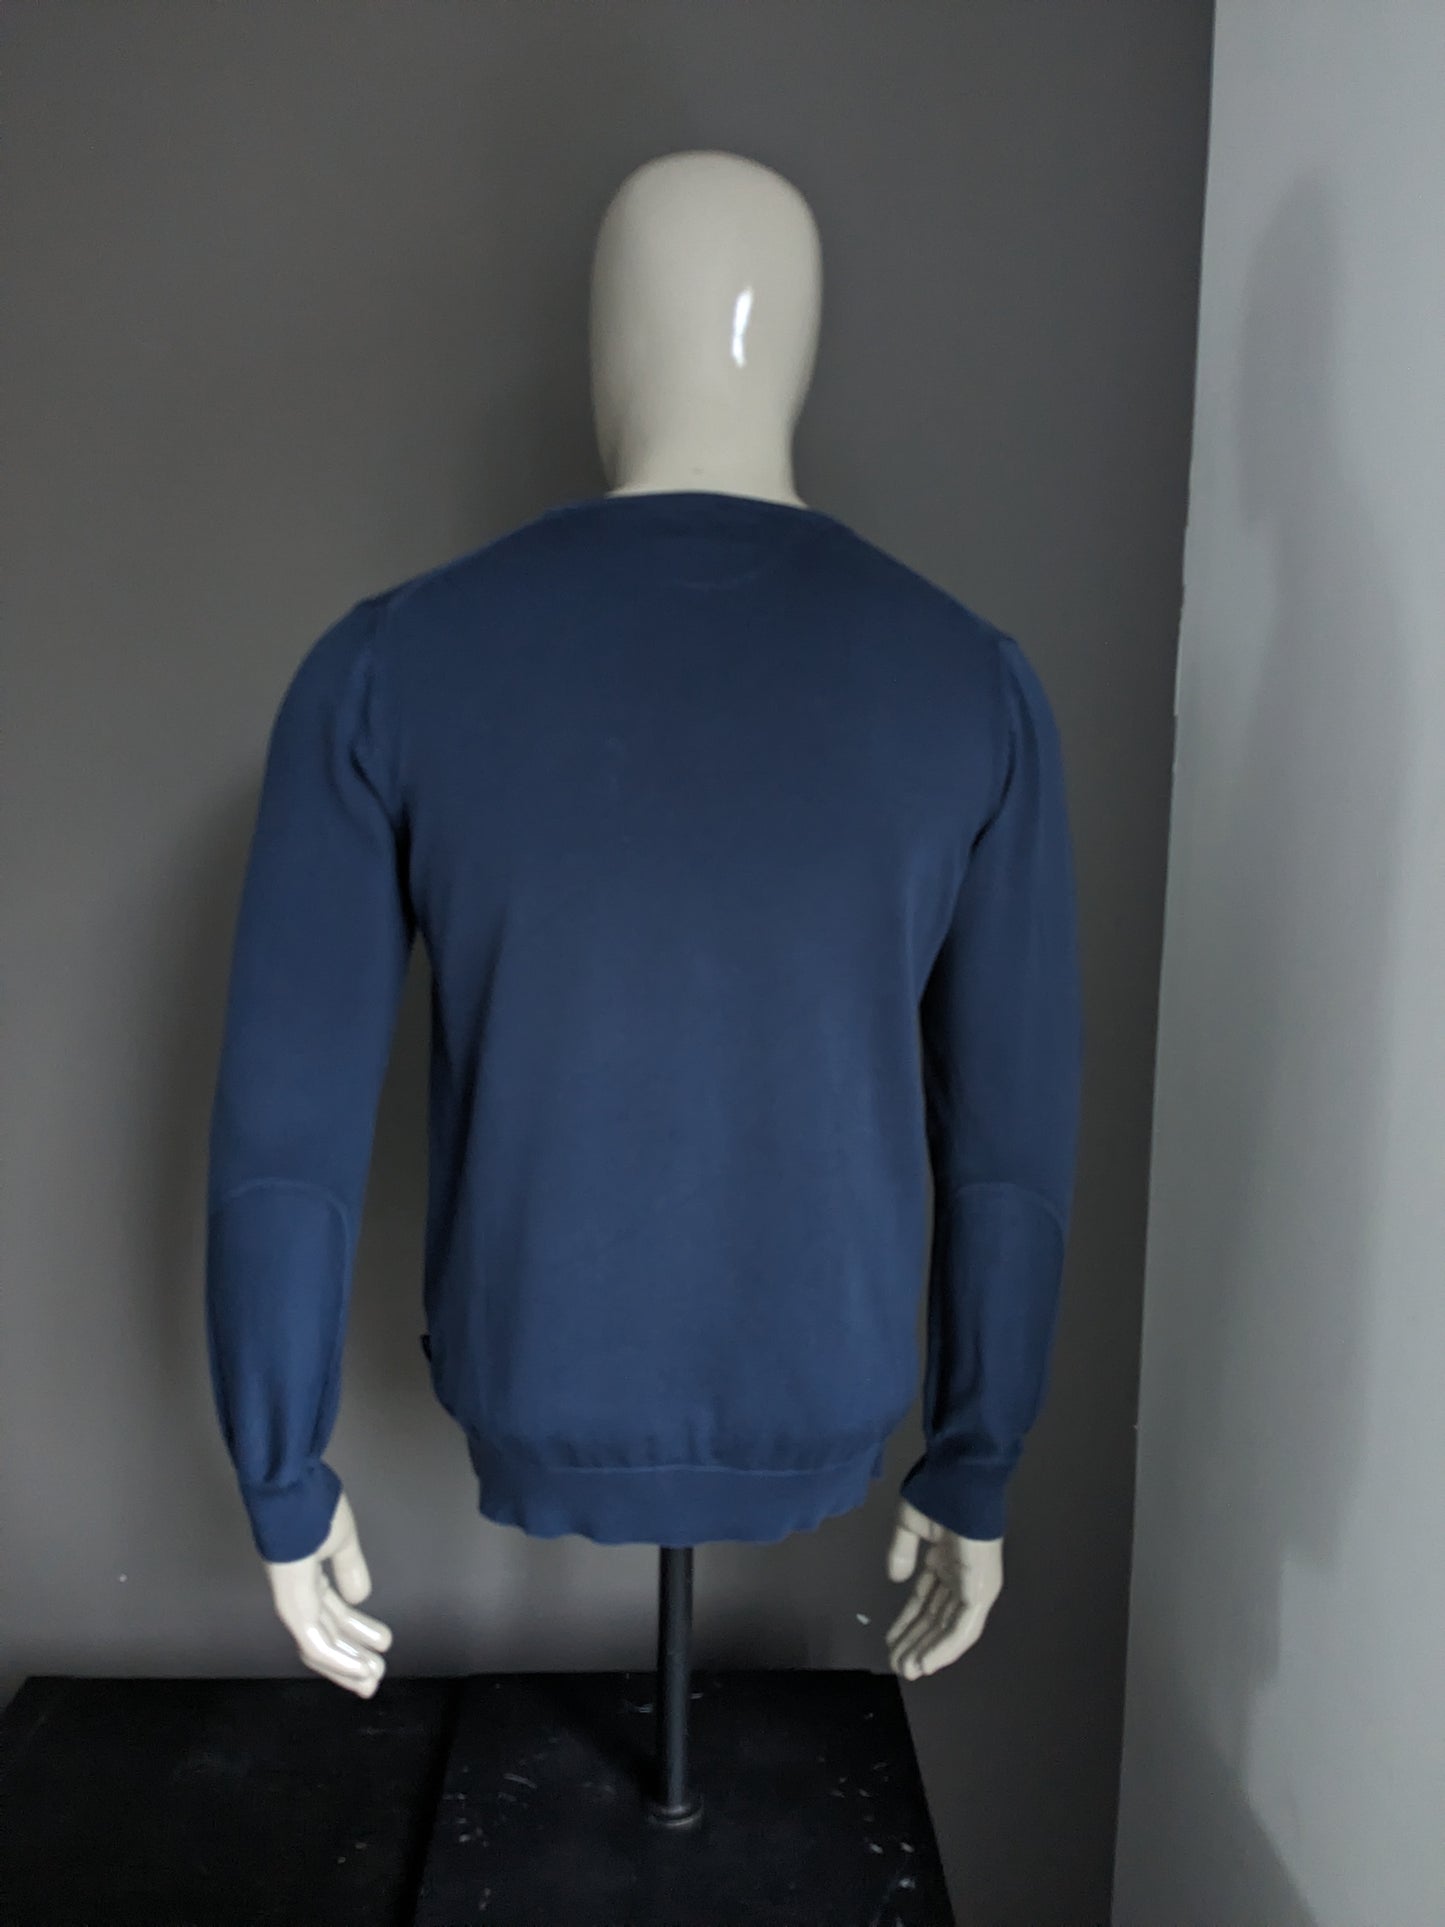 Cavallaro cotton sweater with V-neck. Dark blue colored. Size S.